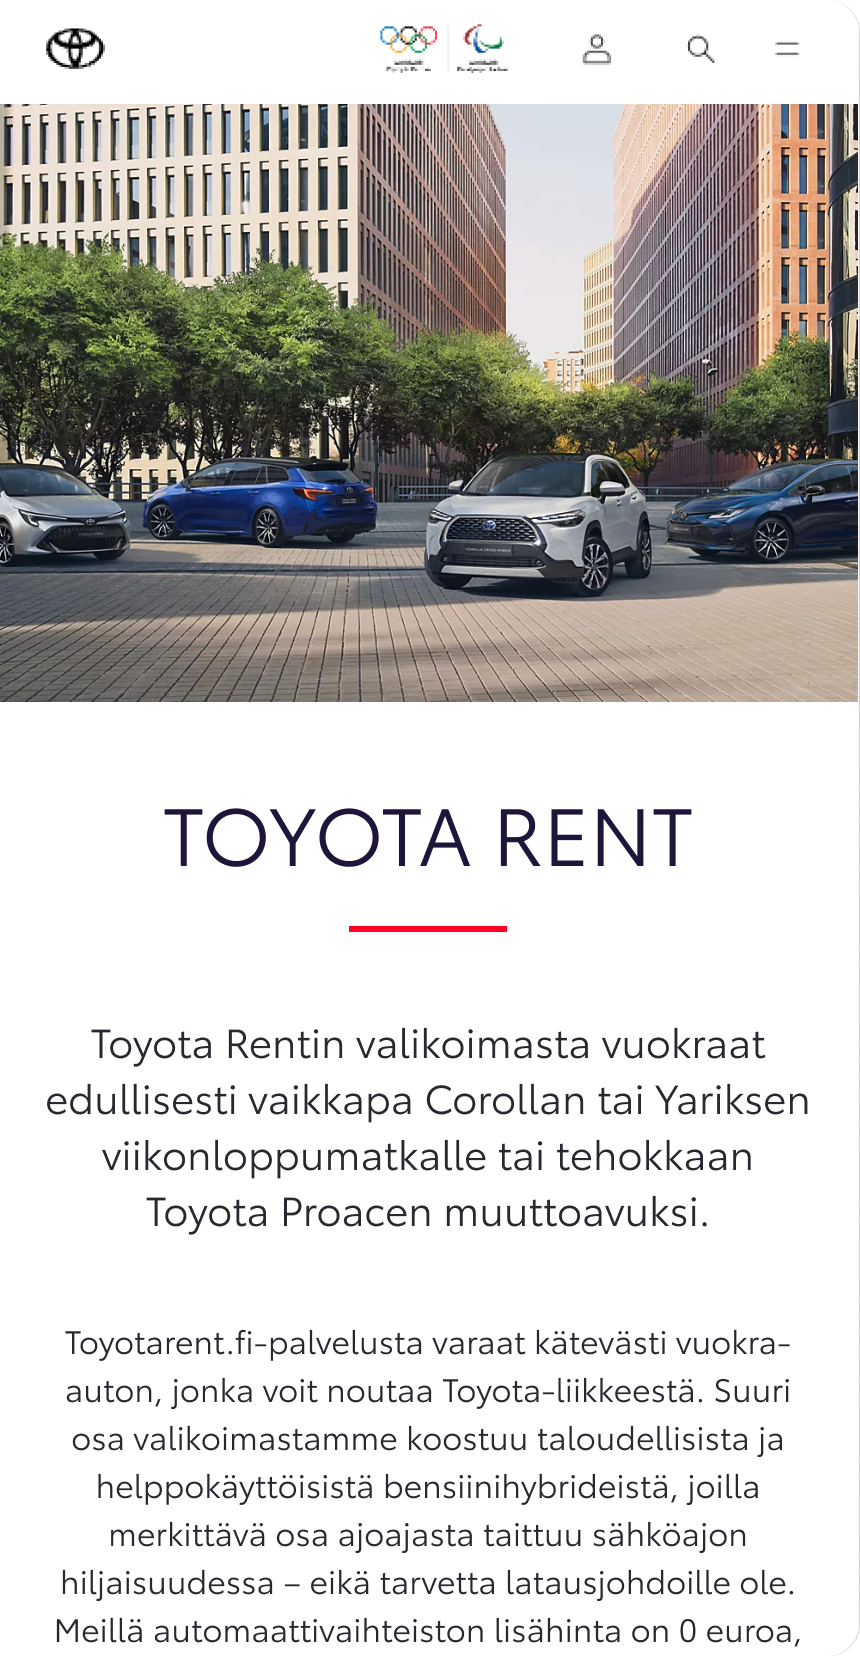 Toyota rent